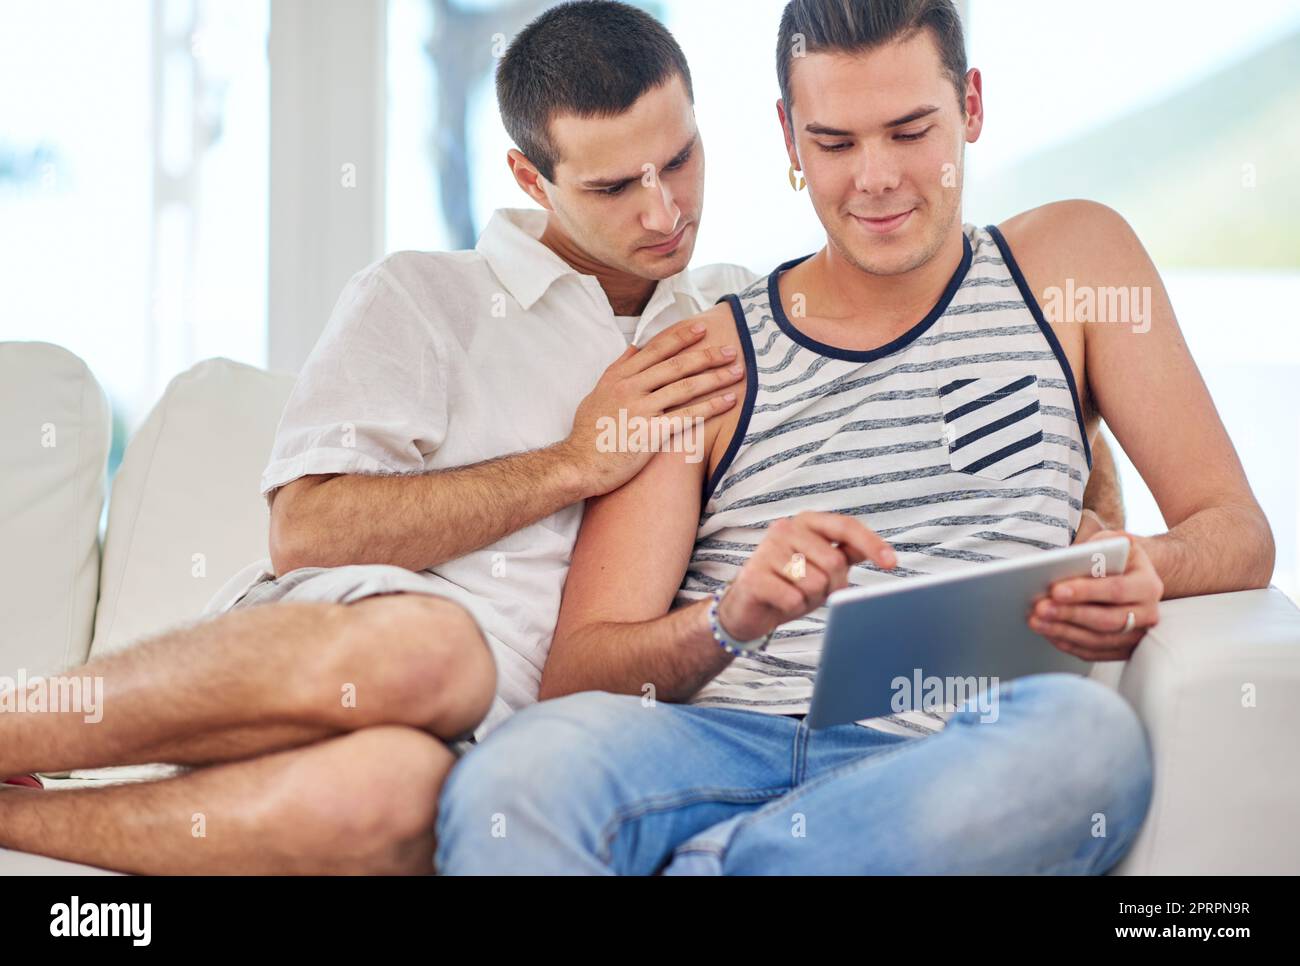 Prendre le plaisir dans les petits moments. Un couple gay utilisant une tablette numérique tout en se relaxant sur le canapé à la maison Banque D'Images